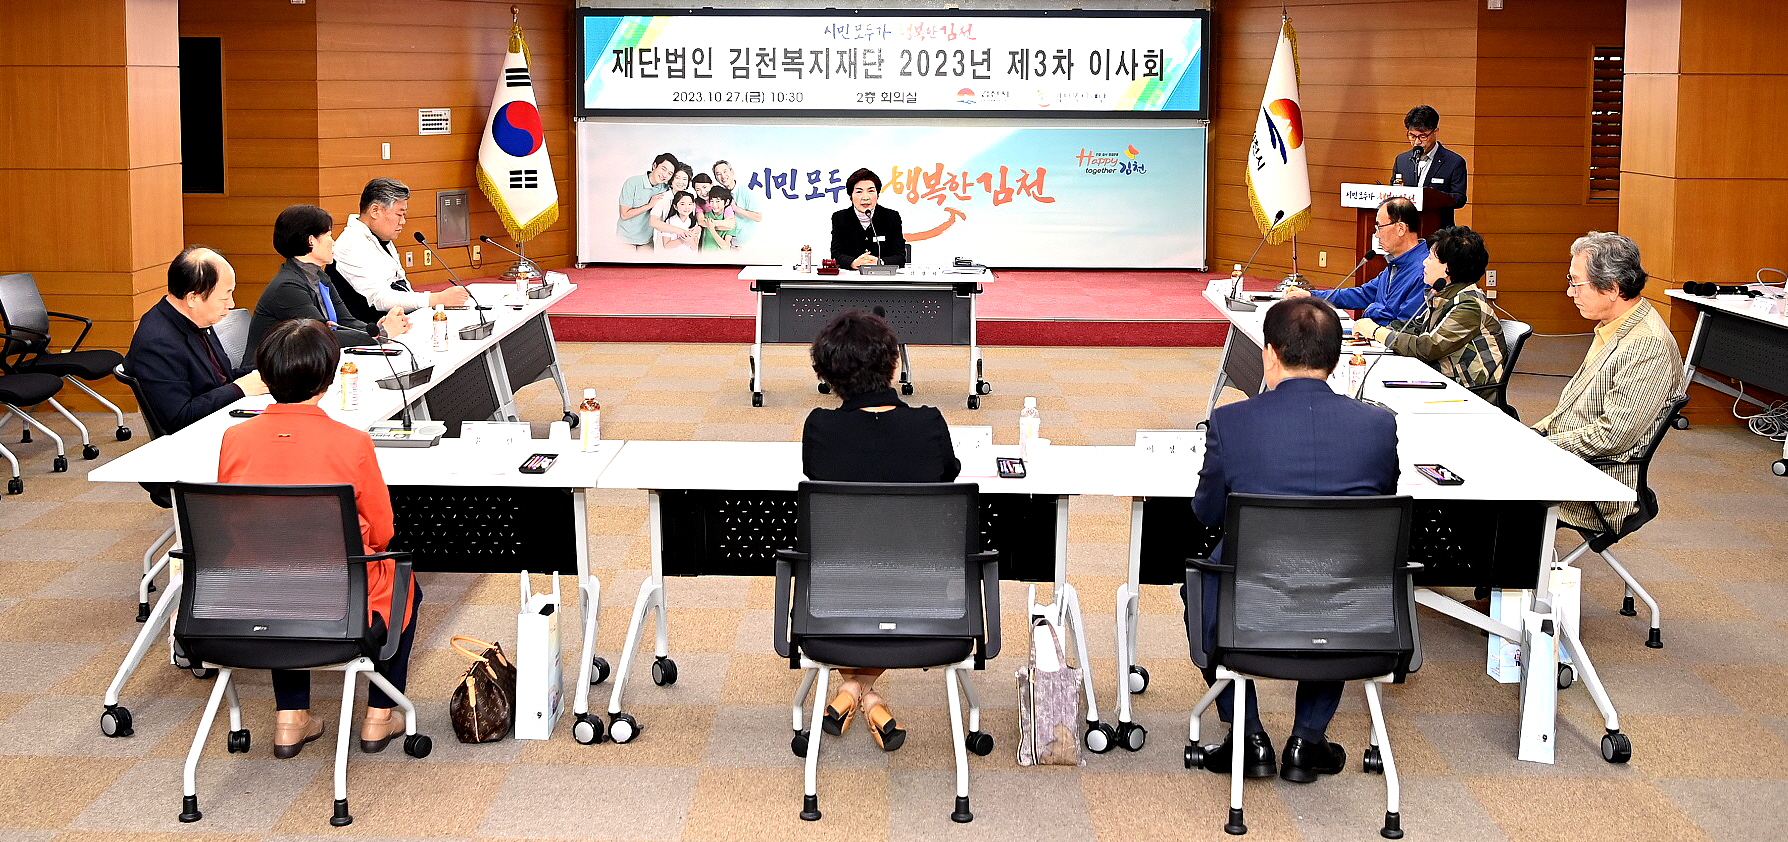 공감, 소통하는 김천형 복지 체제 구축을 위한 이사회 개최